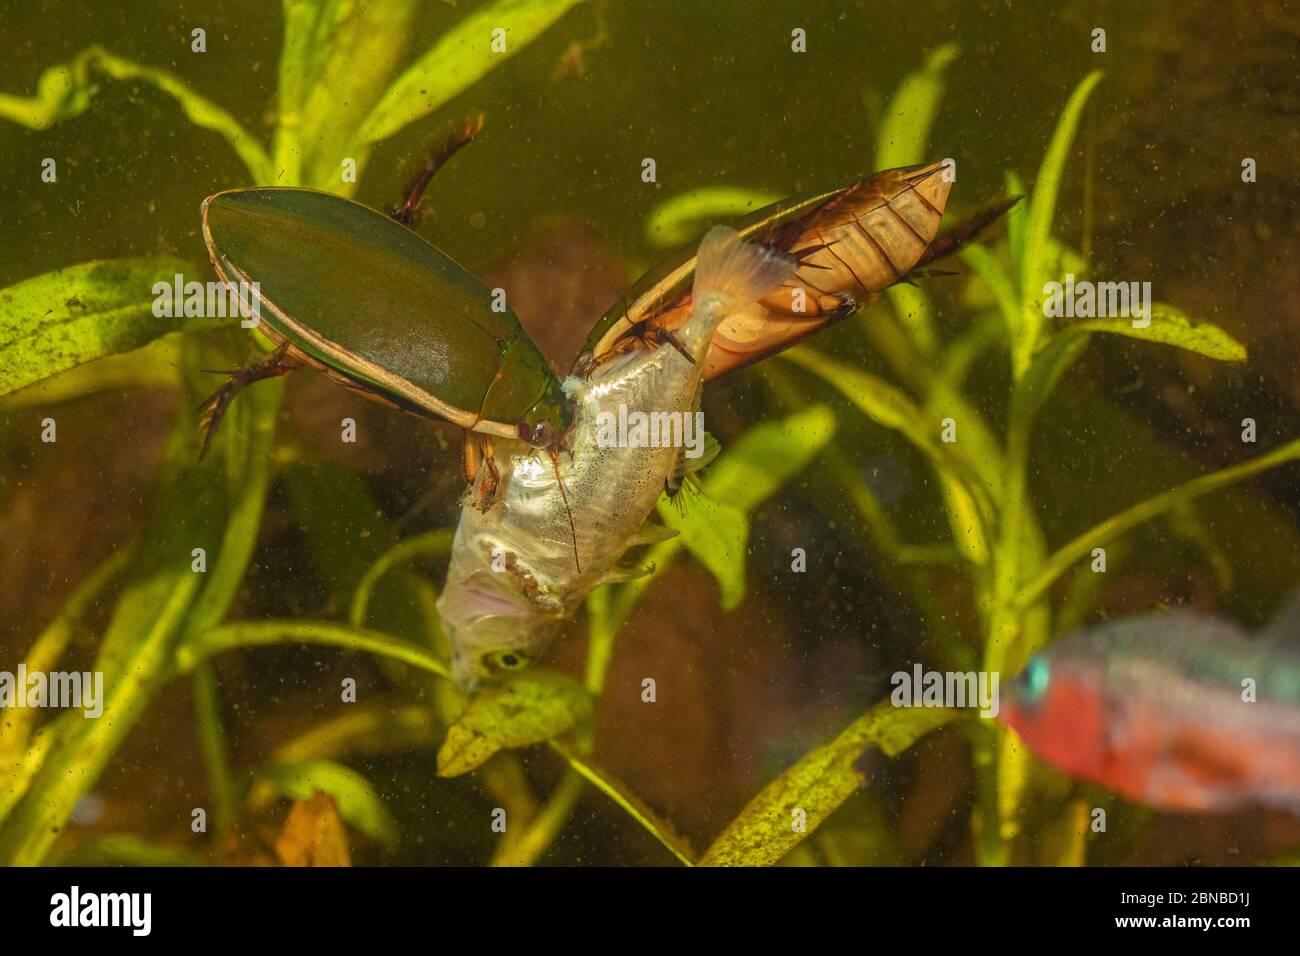 Béterelle de plongée (Cybister lateralimarginalis, Scaphinectes lateralimarginalis), deux scarabées se nourrissent d'épinoches à trois épines, en Allemagne Banque D'Images